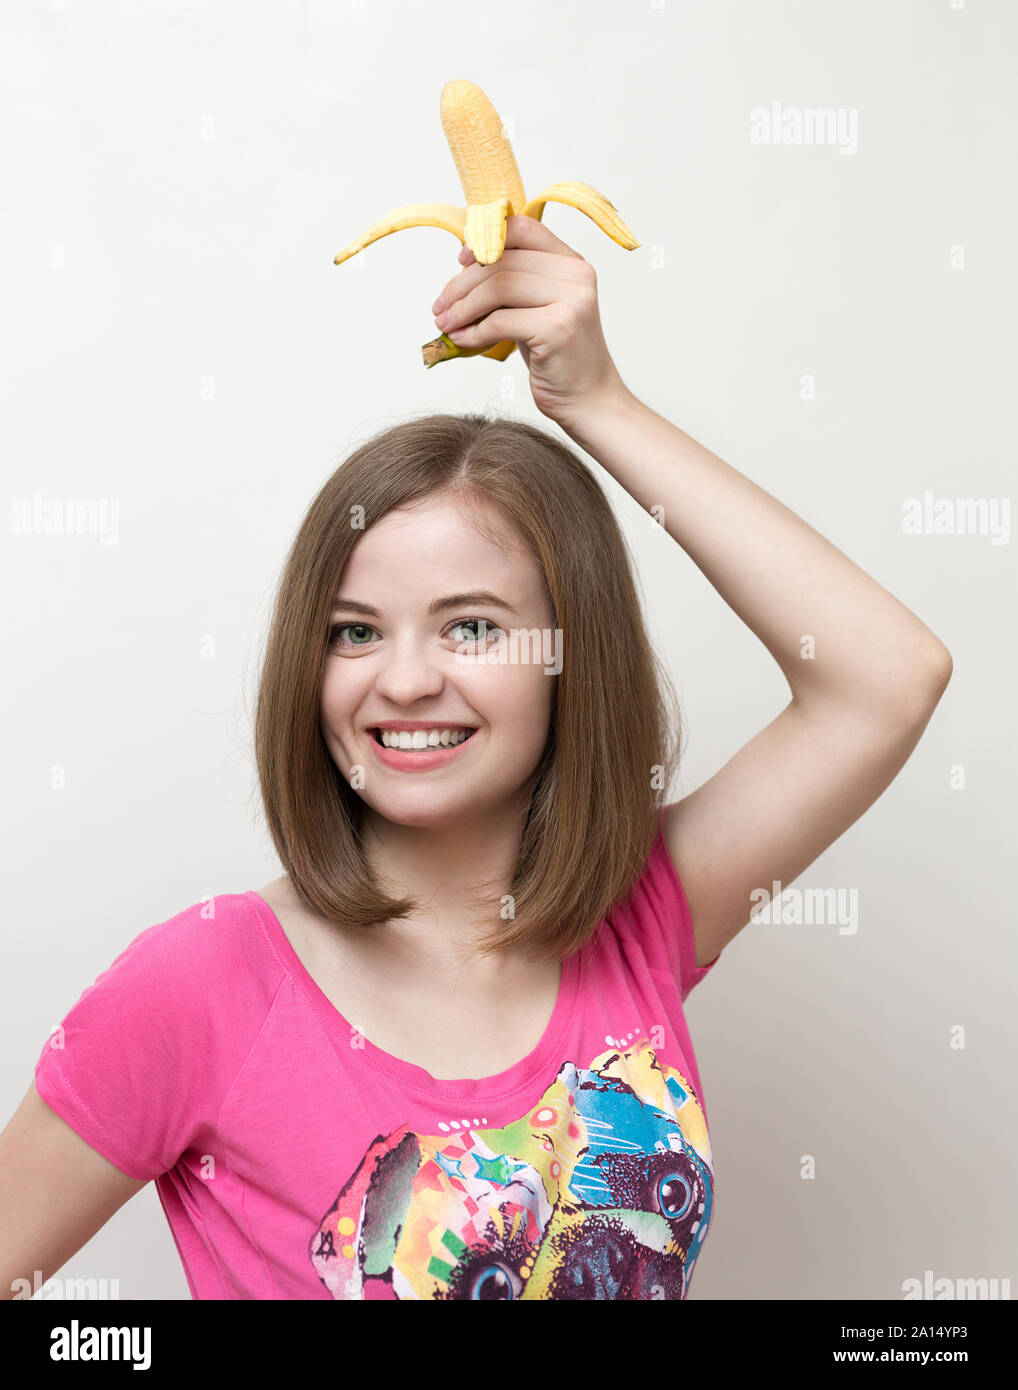 Portrait of smiling caucasian woman girl avec banane jaune dans sa main. Mode de vie sain, des fruits régime végétarien. Banque D'Images